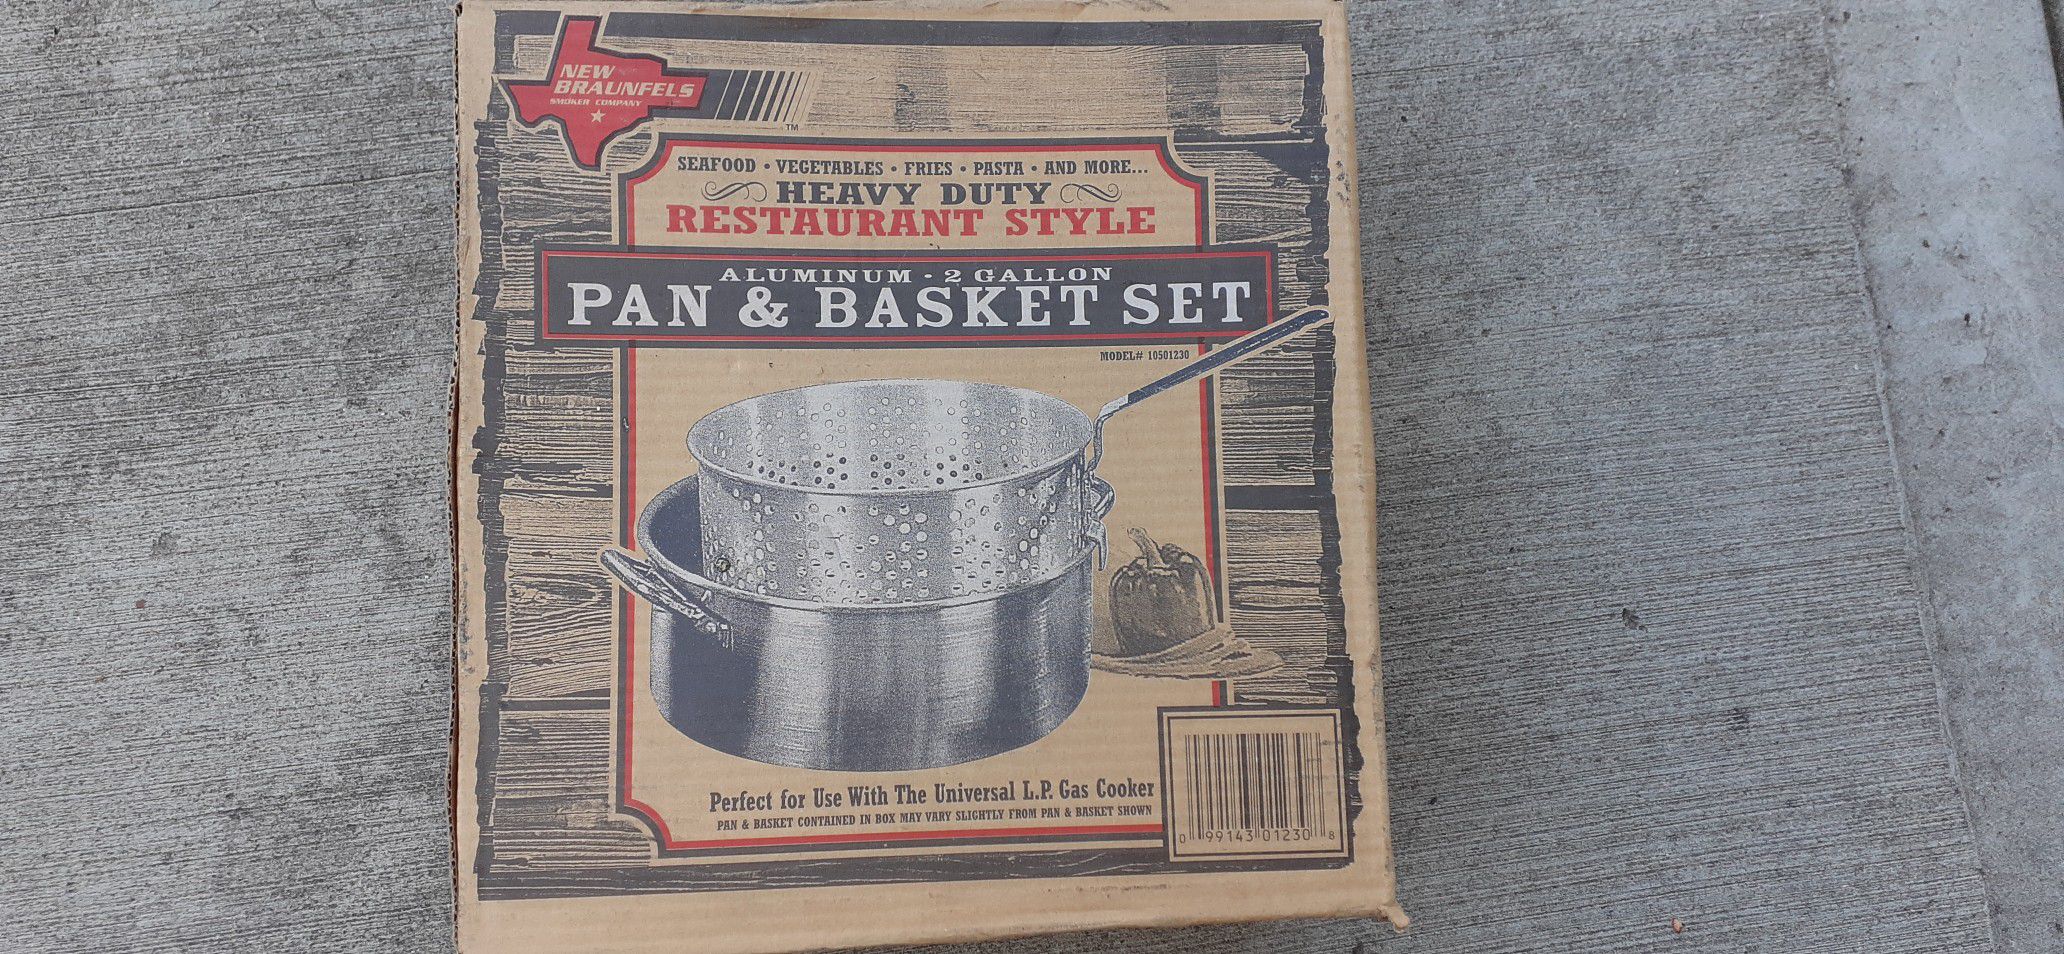 New pan and basquet set